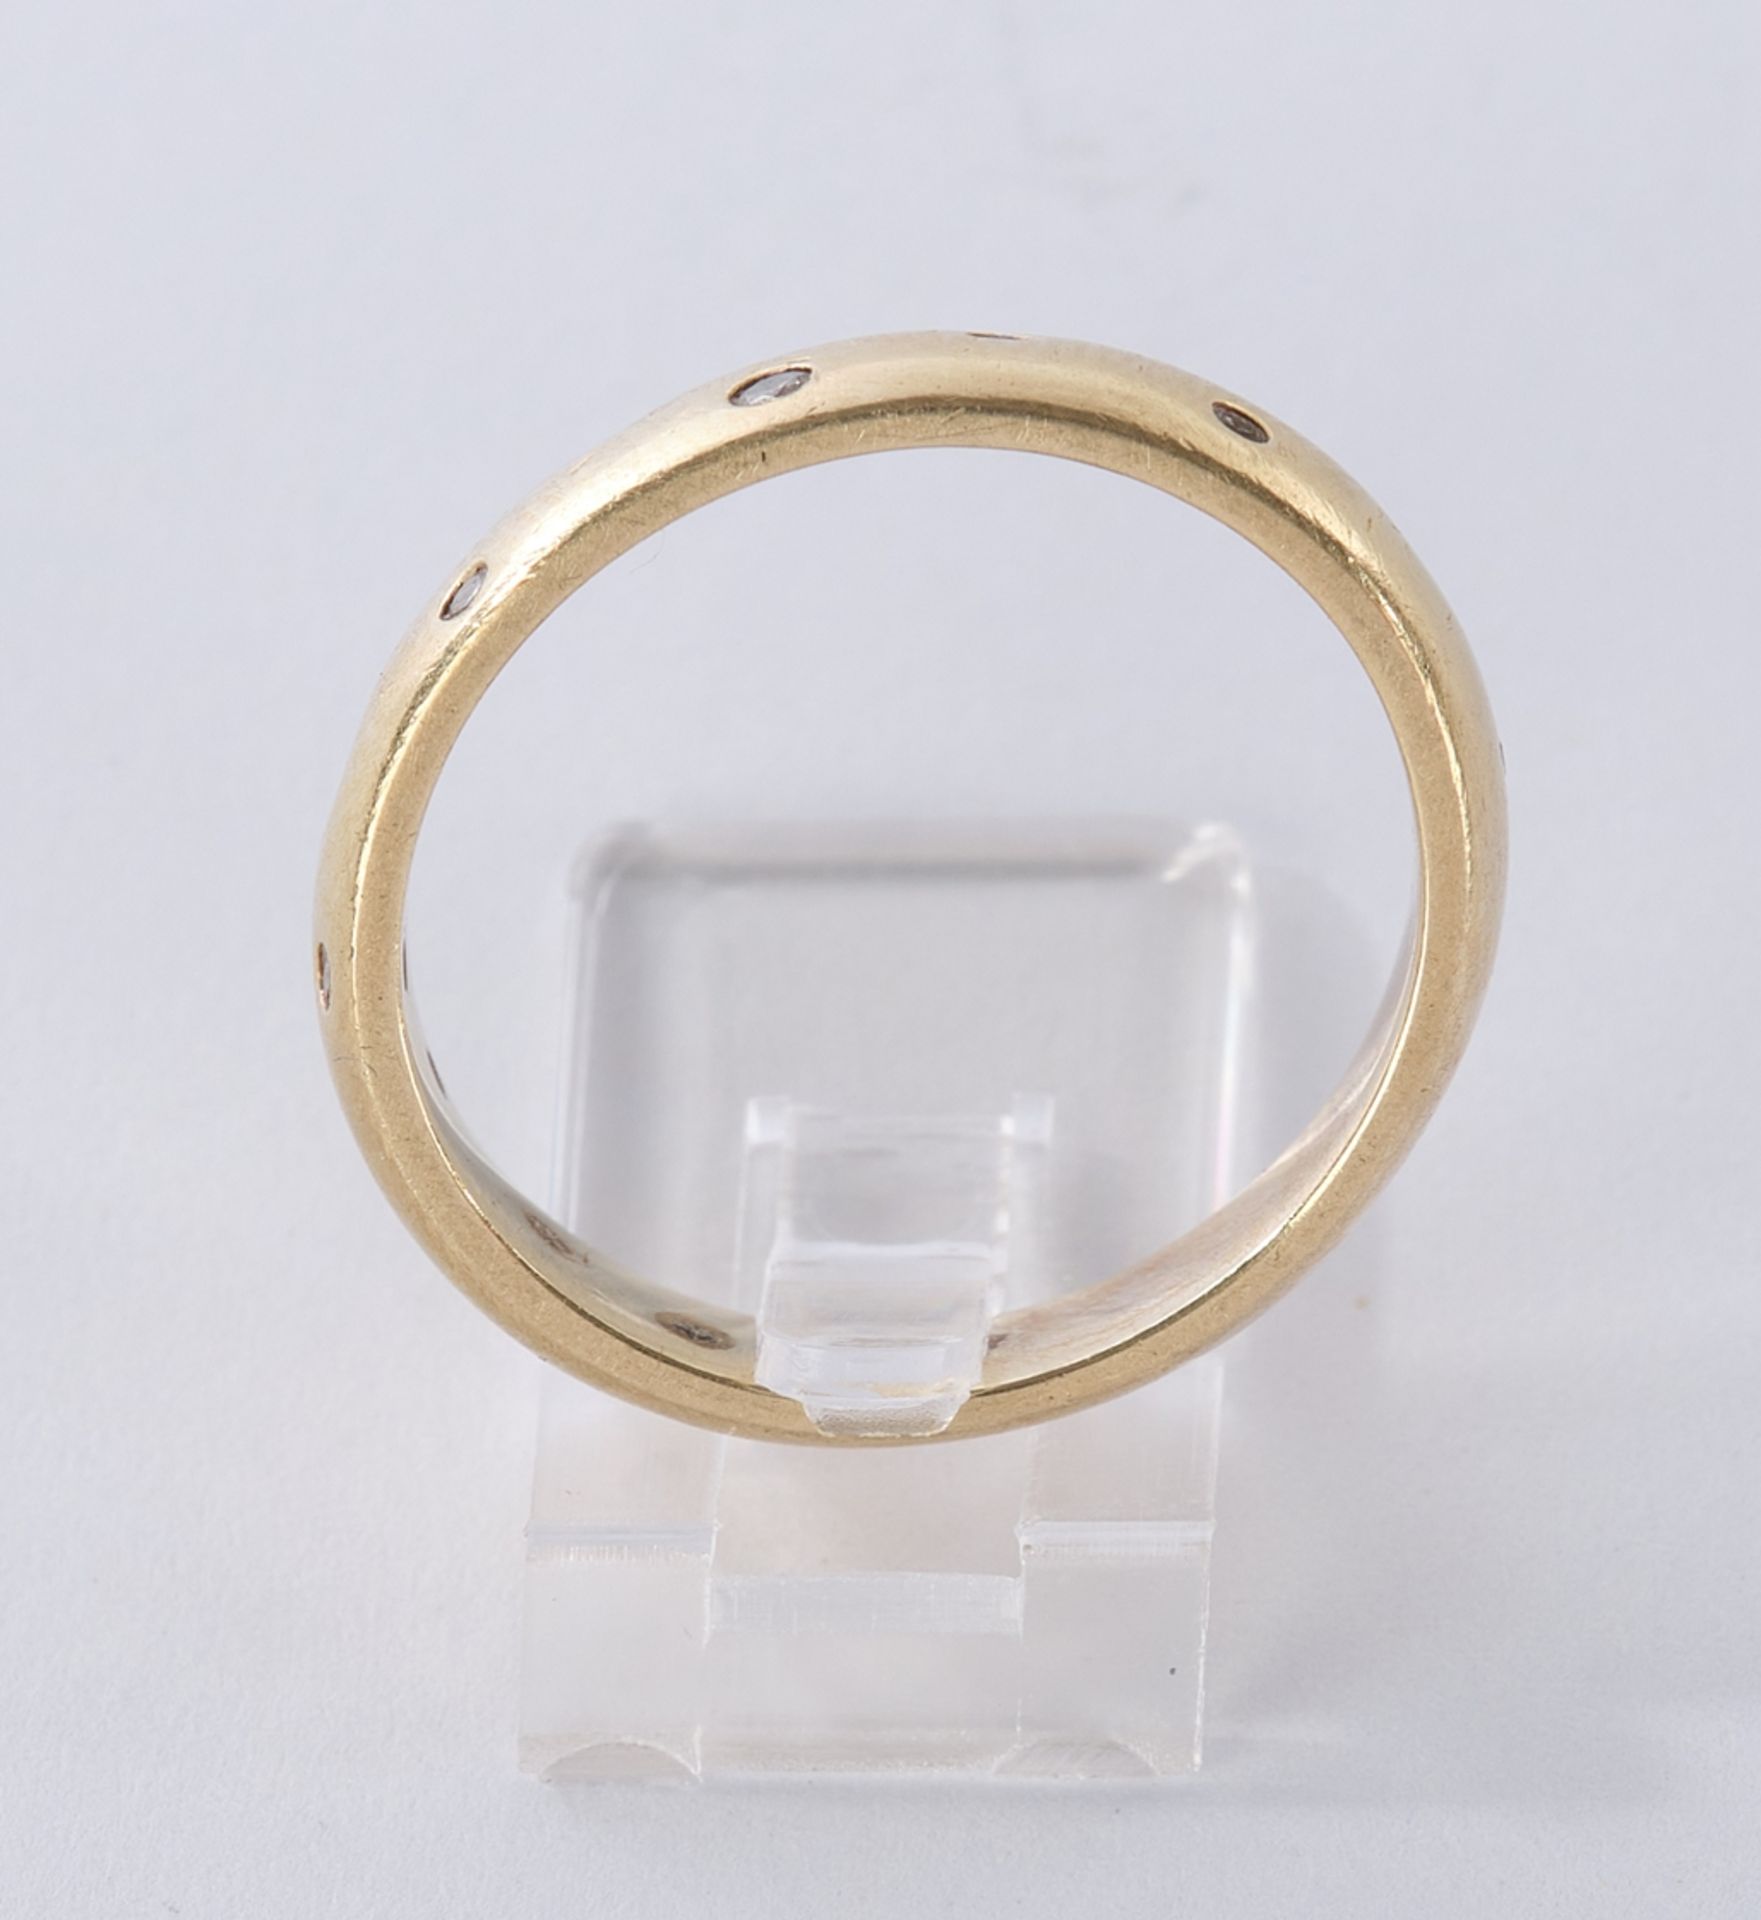 Ring, GG 585, 11 Brillanten zus. ca. 0.10 ct., etwa si, 4.9 g, RM 53.5 - Bild 3 aus 3